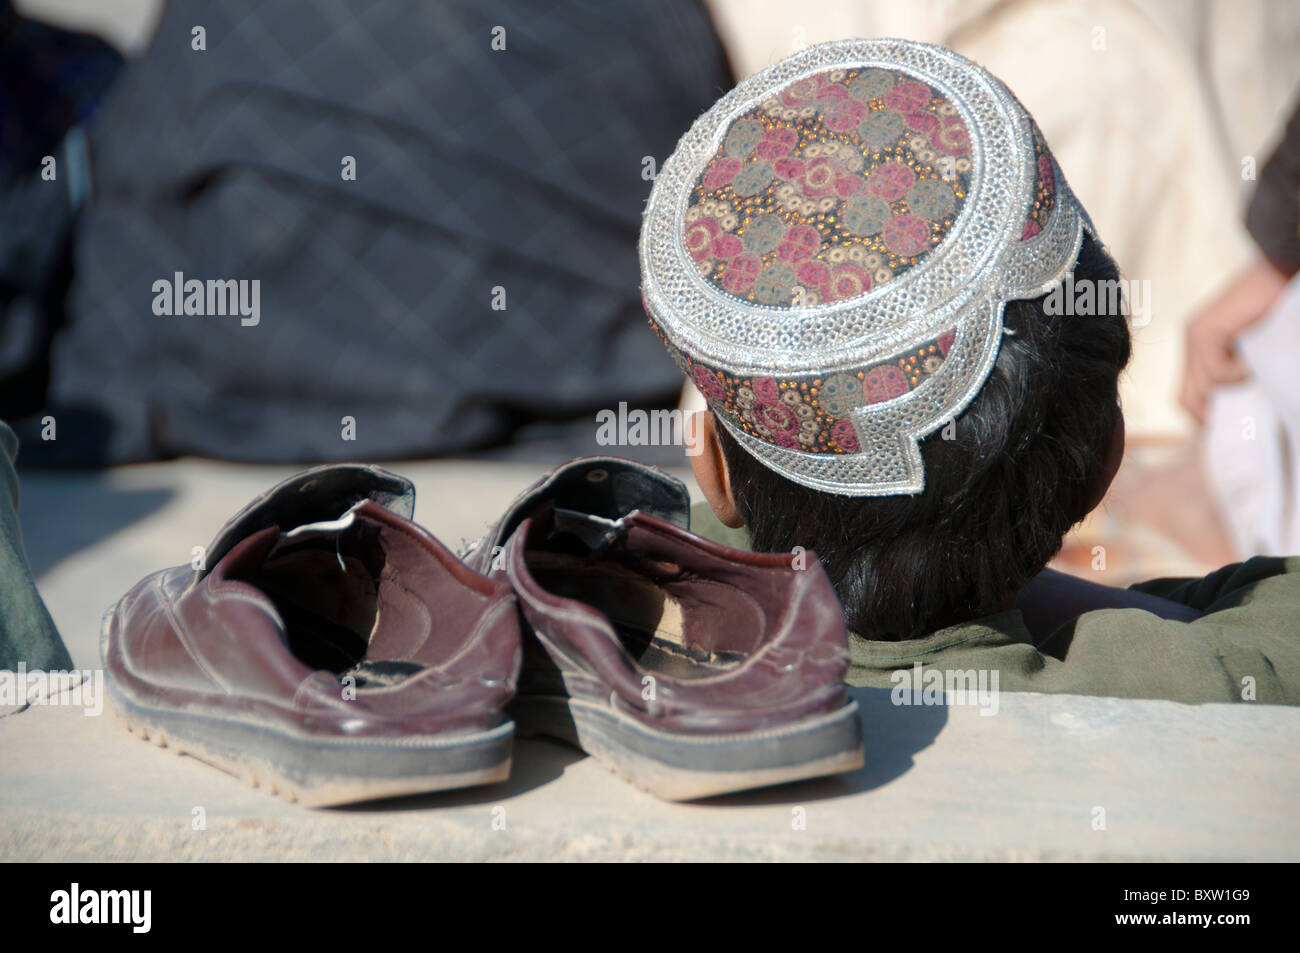 Chaussures dans la province de Helmand en Afghanistan Banque D'Images